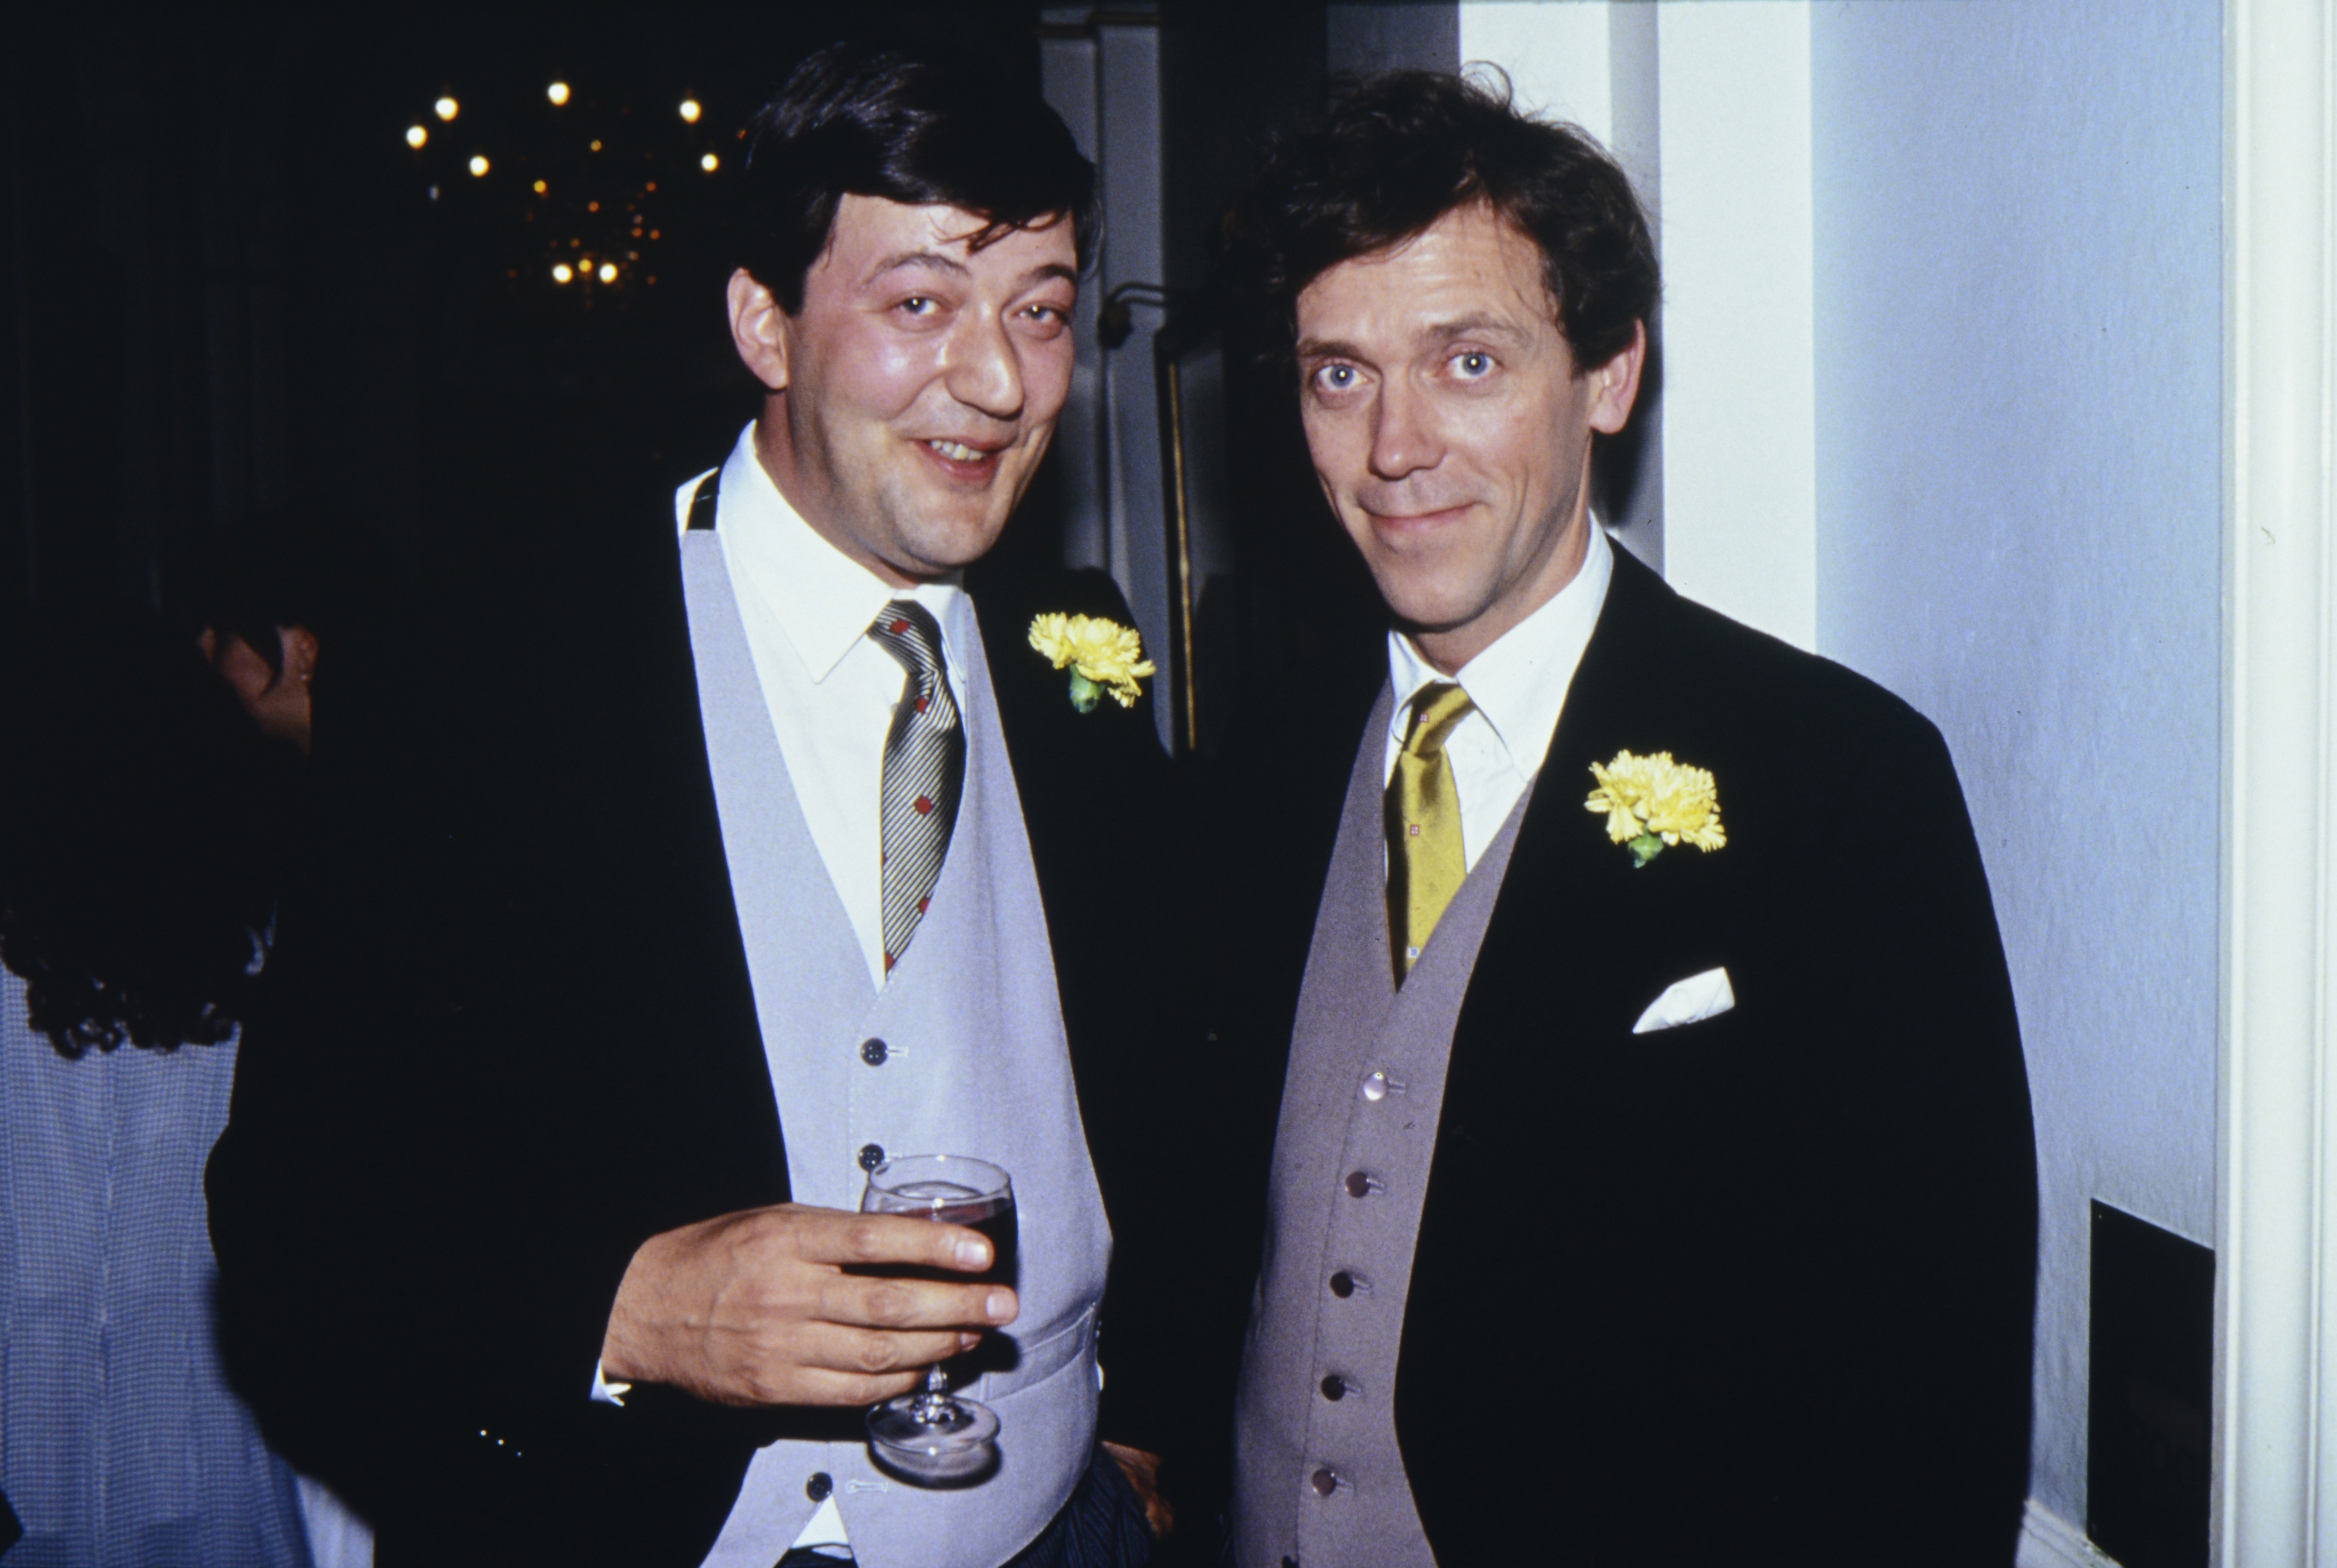 Stephen Fry y Hugh Laurie asisten al estreno en el Reino Unido de "Four Weddings and A Funeral" en Leicester Square, el 11 de mayo de 1994 en Londres, Inglaterra. | Foto: Getty Images